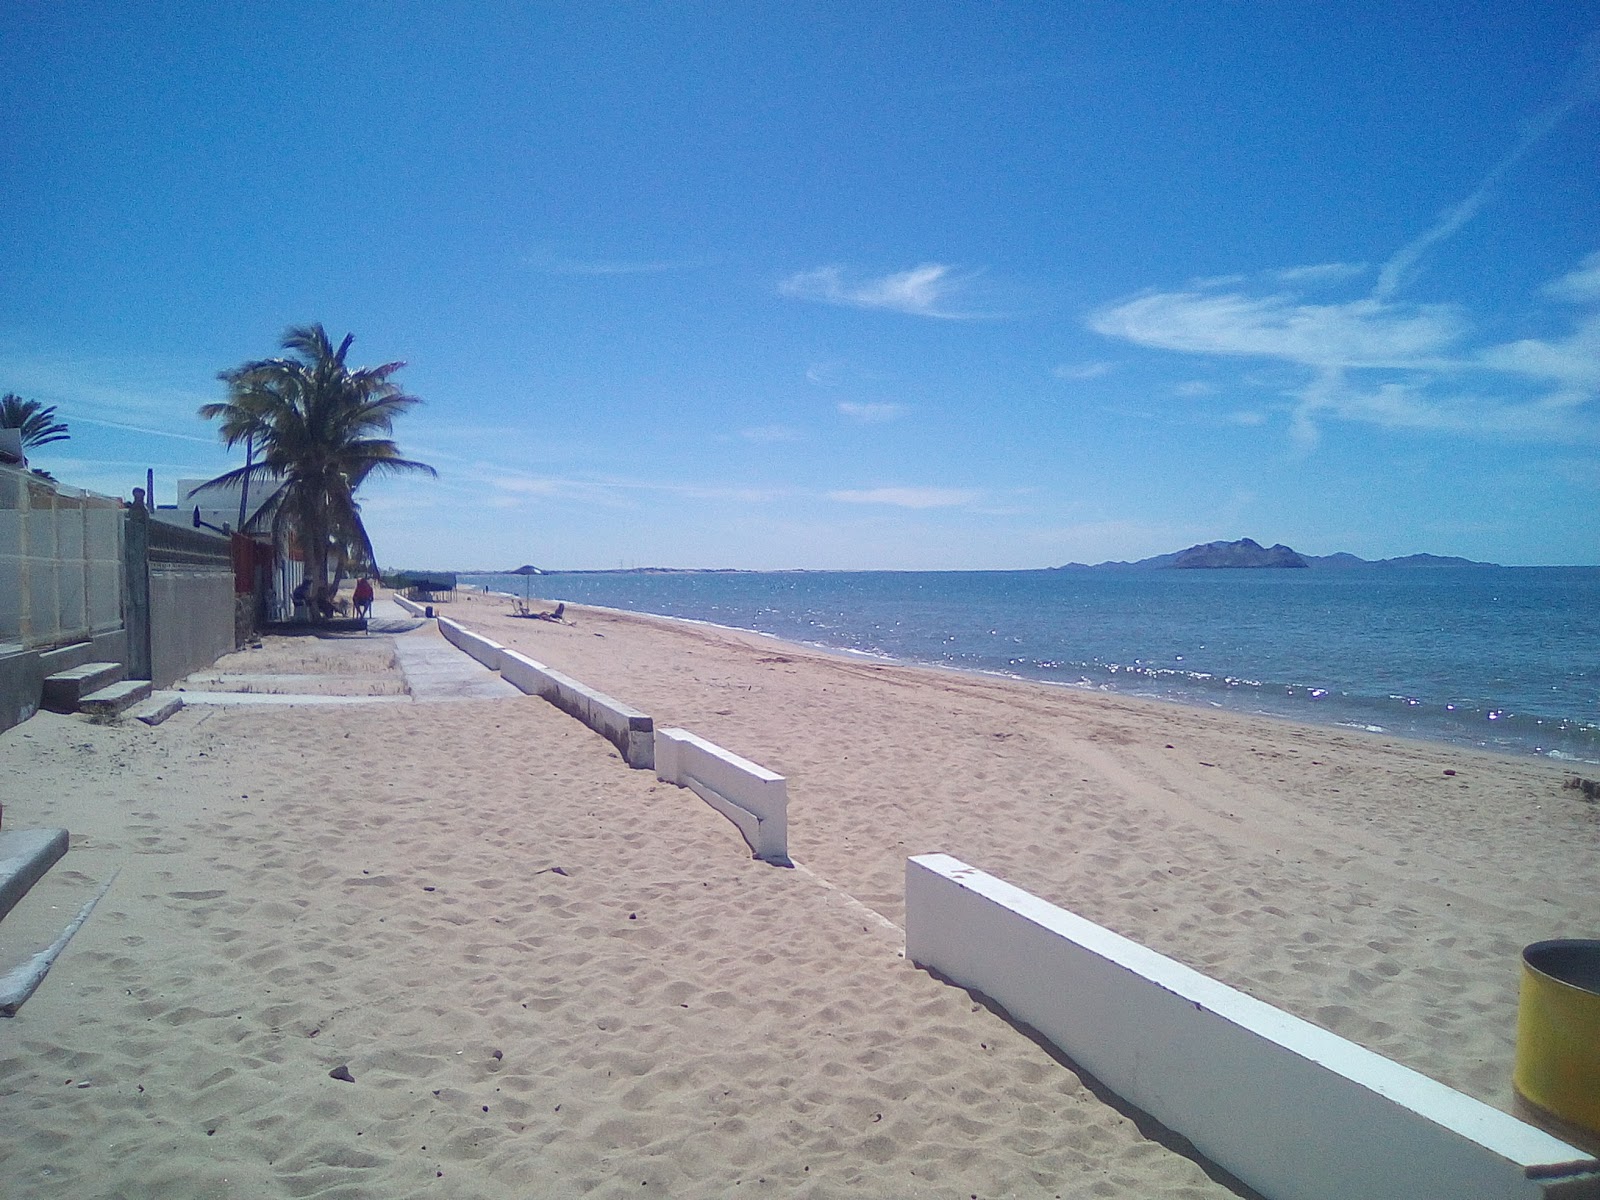 Zdjęcie Bahia de Kino II z powierzchnią jasny piasek